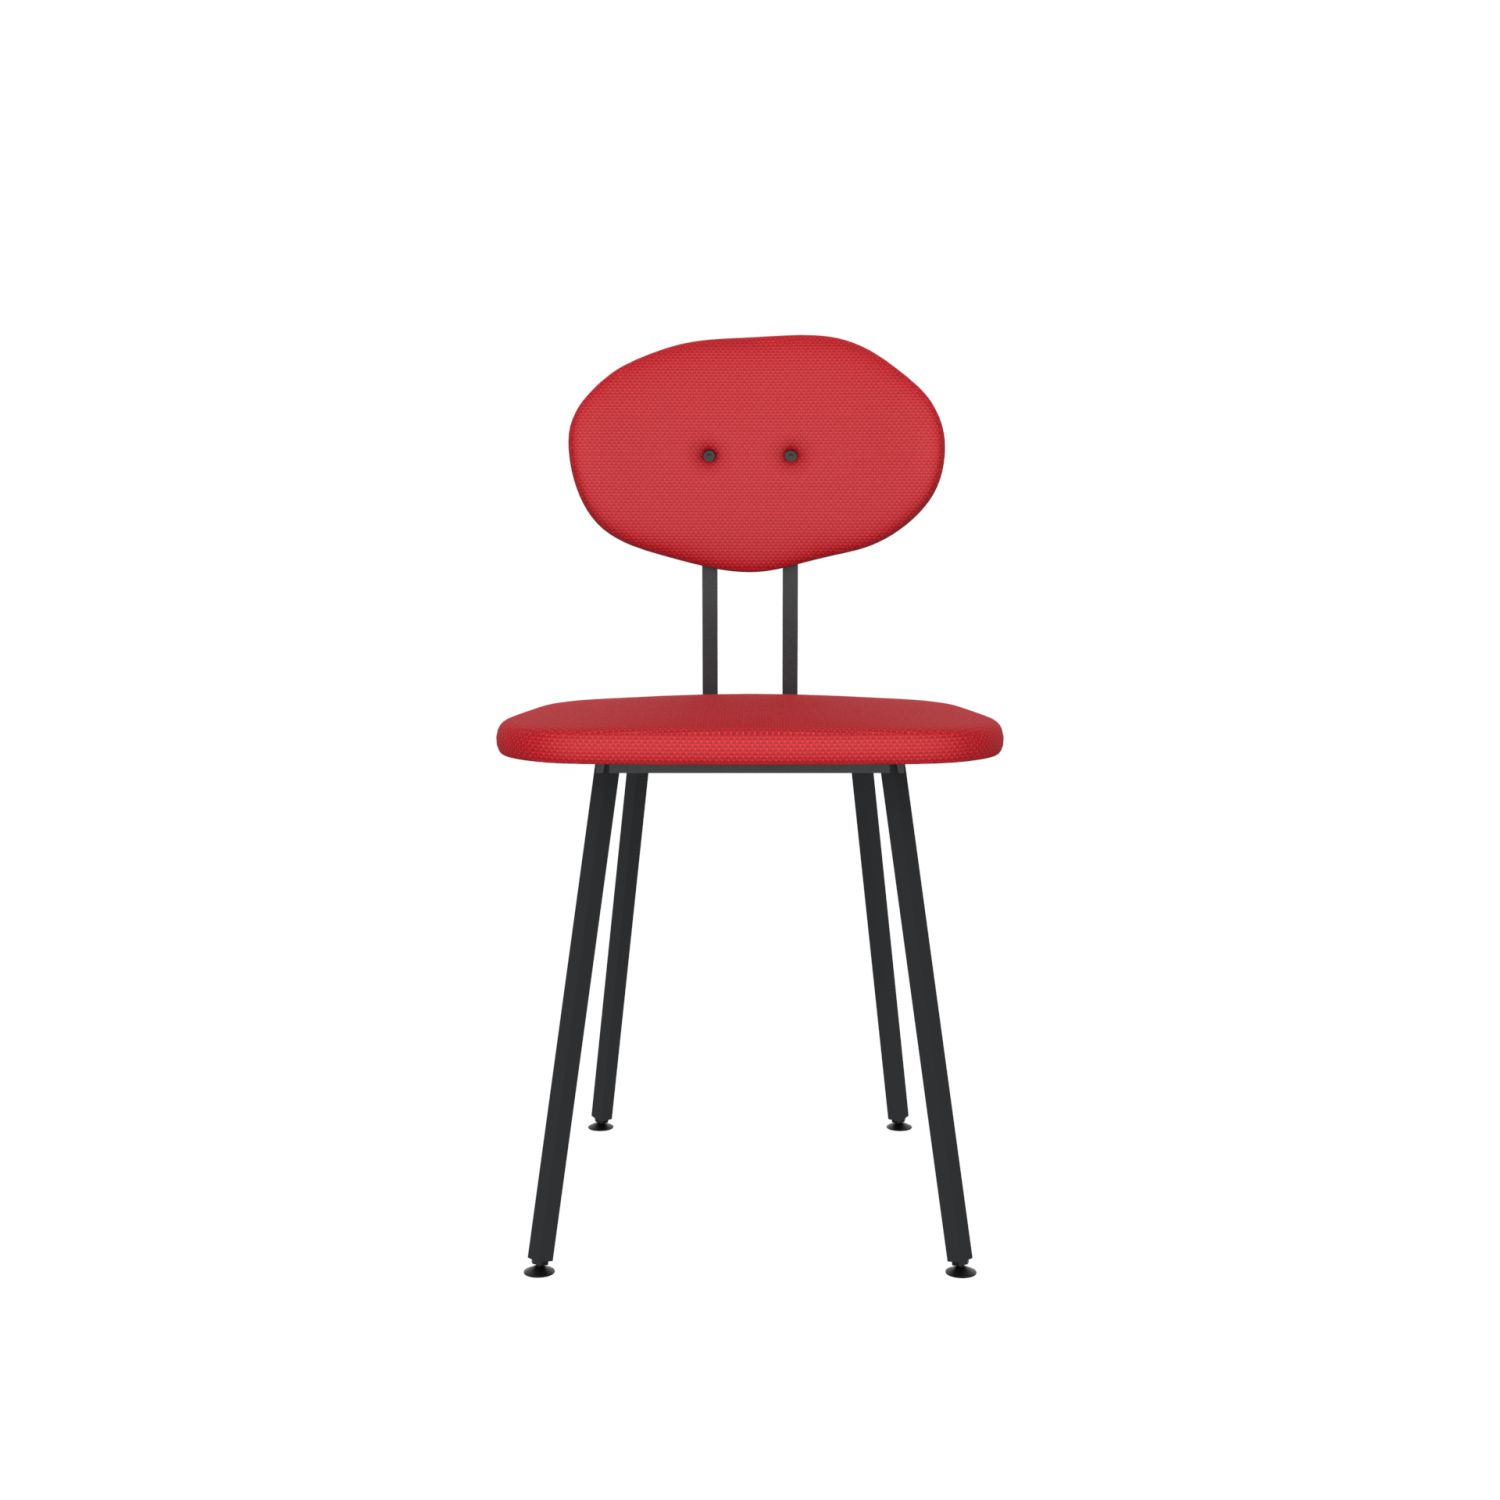 lensvelt maarten baas chair 101 not stackable without armrests backrest d grenada red 010 black ral9005 hard leg ends